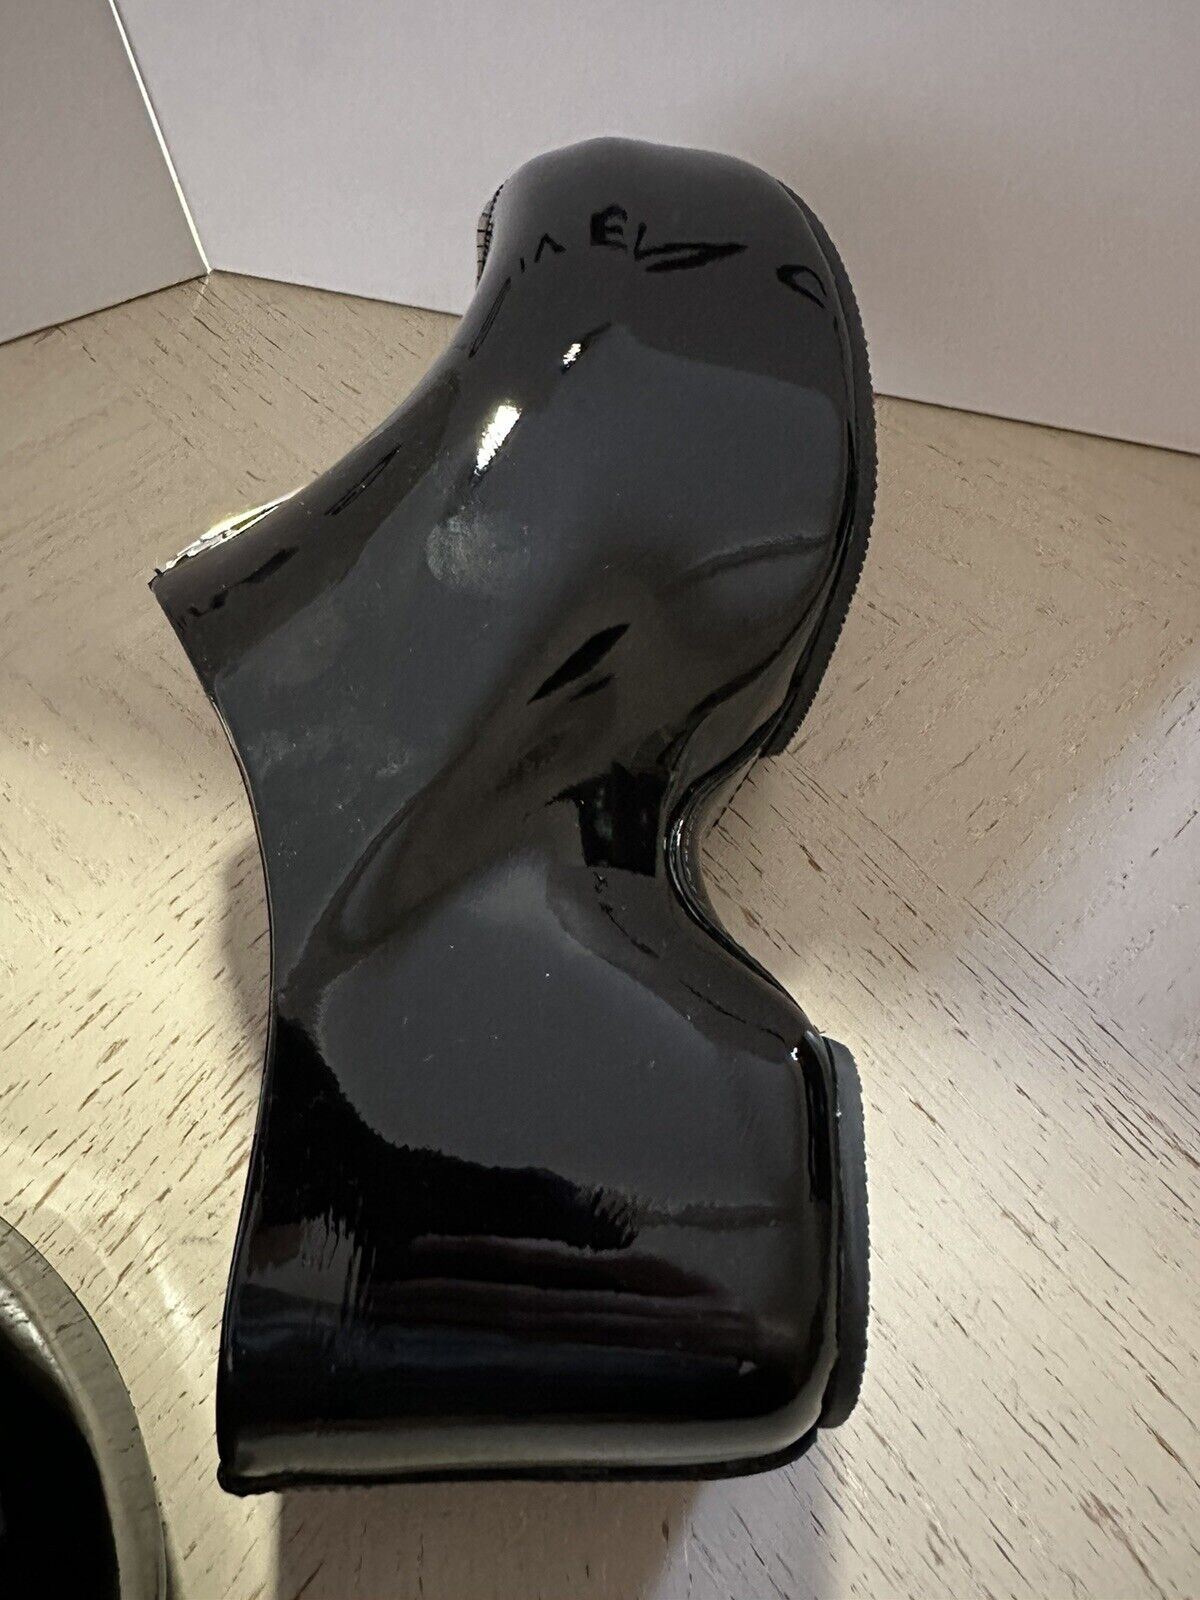 NIB $1150 Женские сабо-мюли с лаковой застежкой-молнией Givenchy G, черные 9 США/39 ЕС, Италия